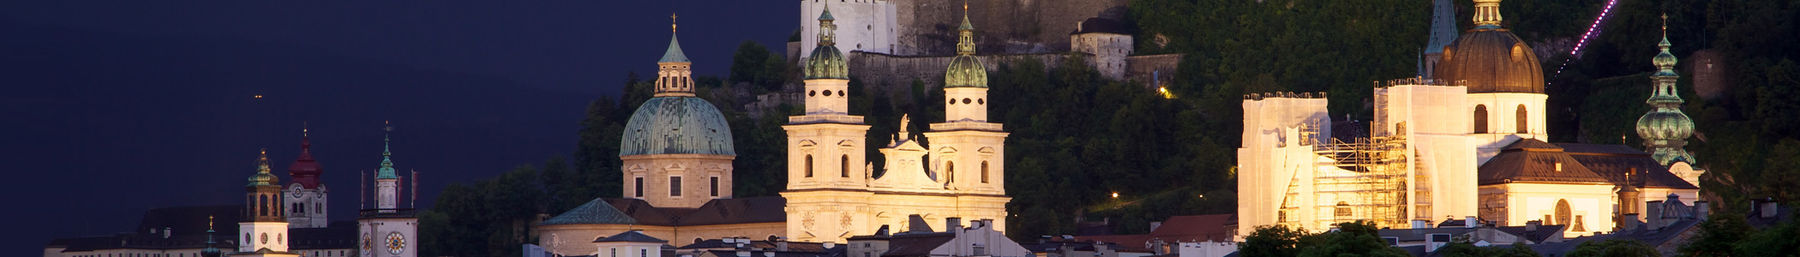 Banner Salzburg.jpg